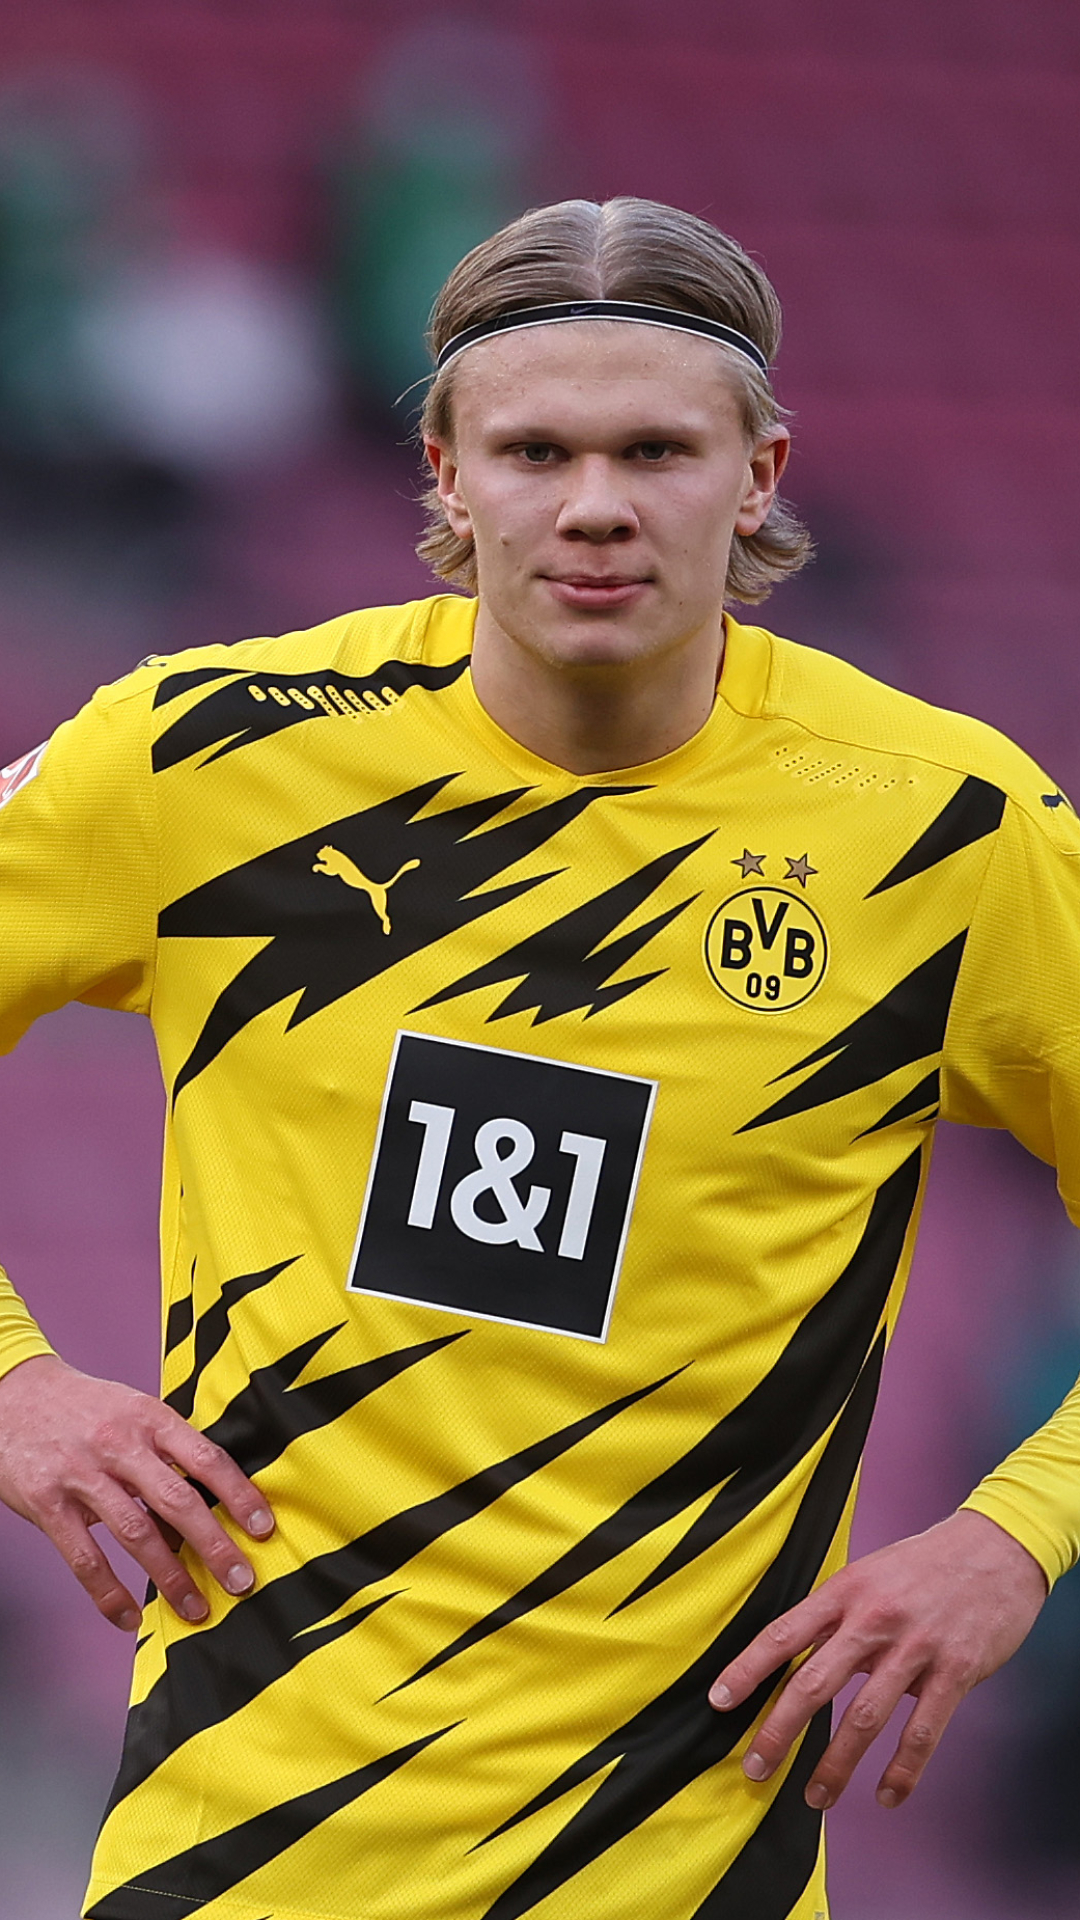 Descarga gratuita de fondo de pantalla para móvil de Fútbol, Deporte, Borussia Dortmund, Erling Haaland.